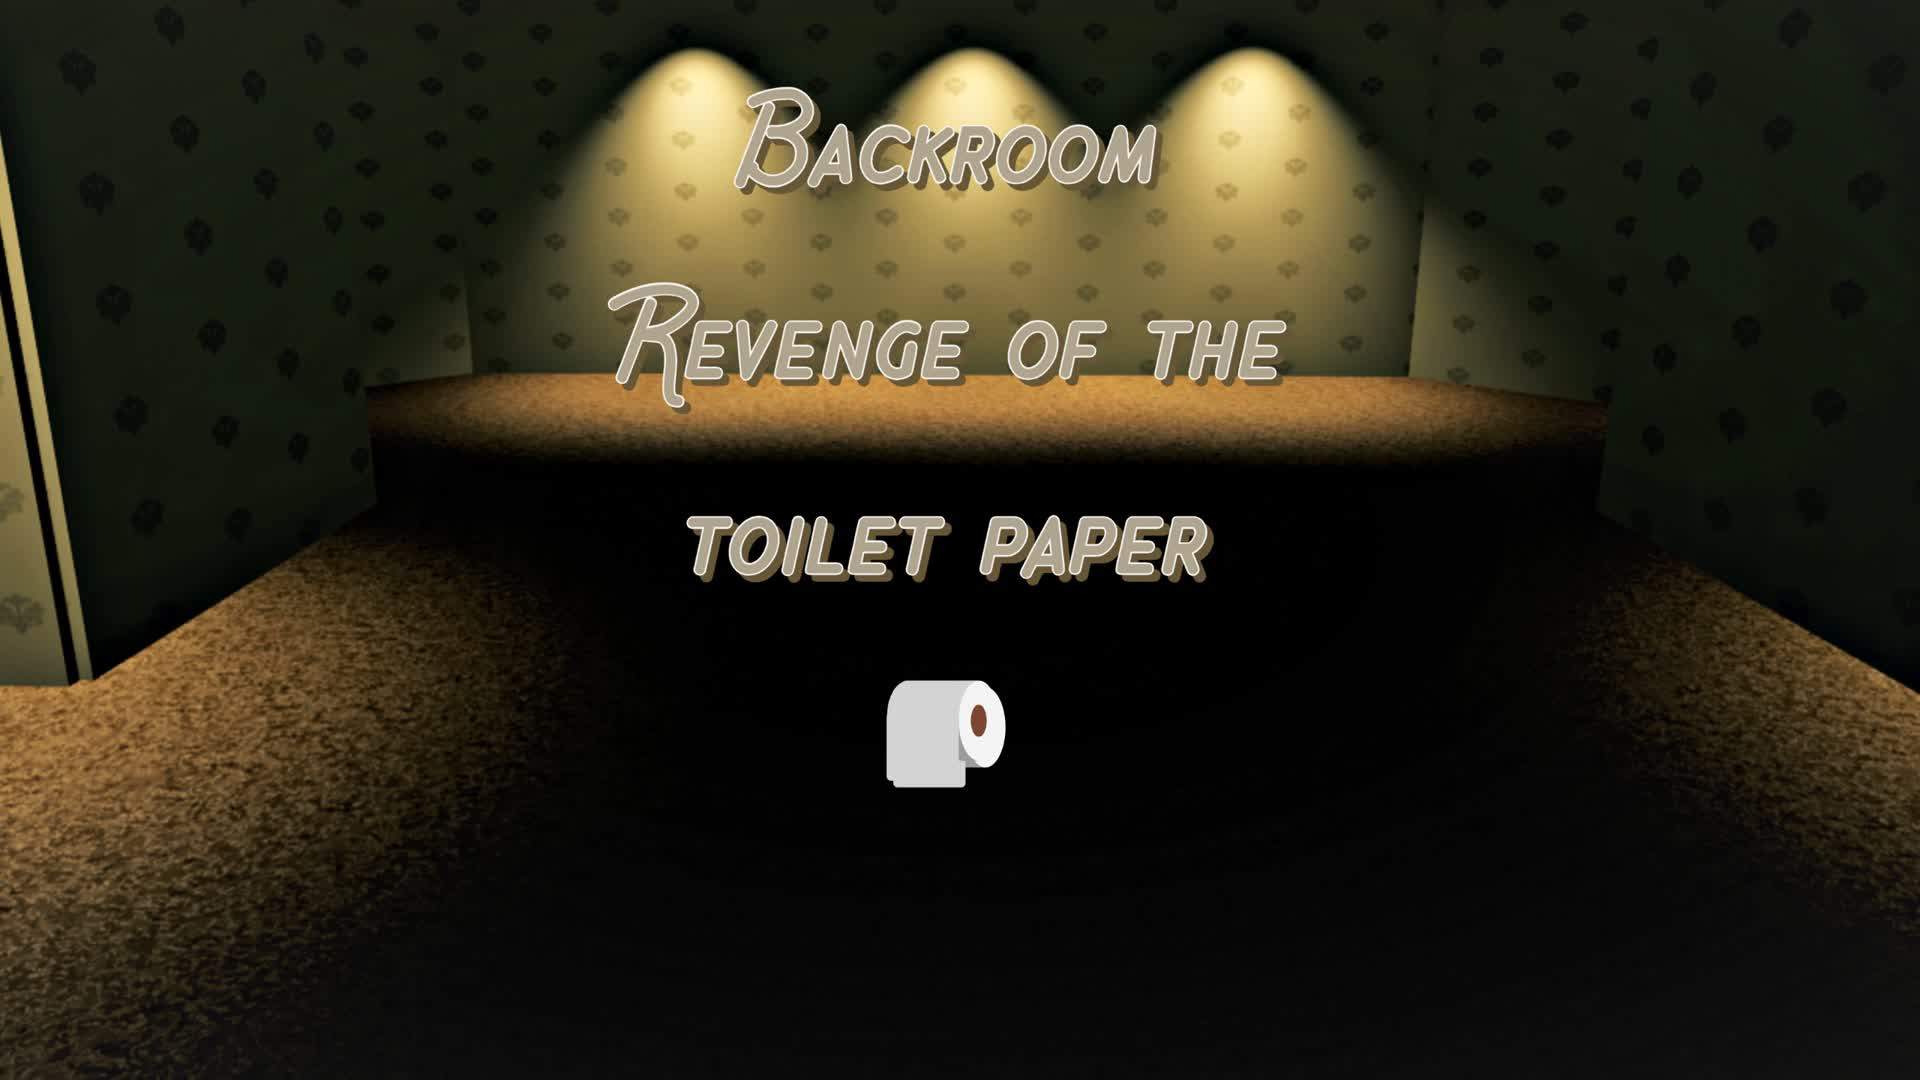 Backroom: Revenge of the toilet paper 🧻